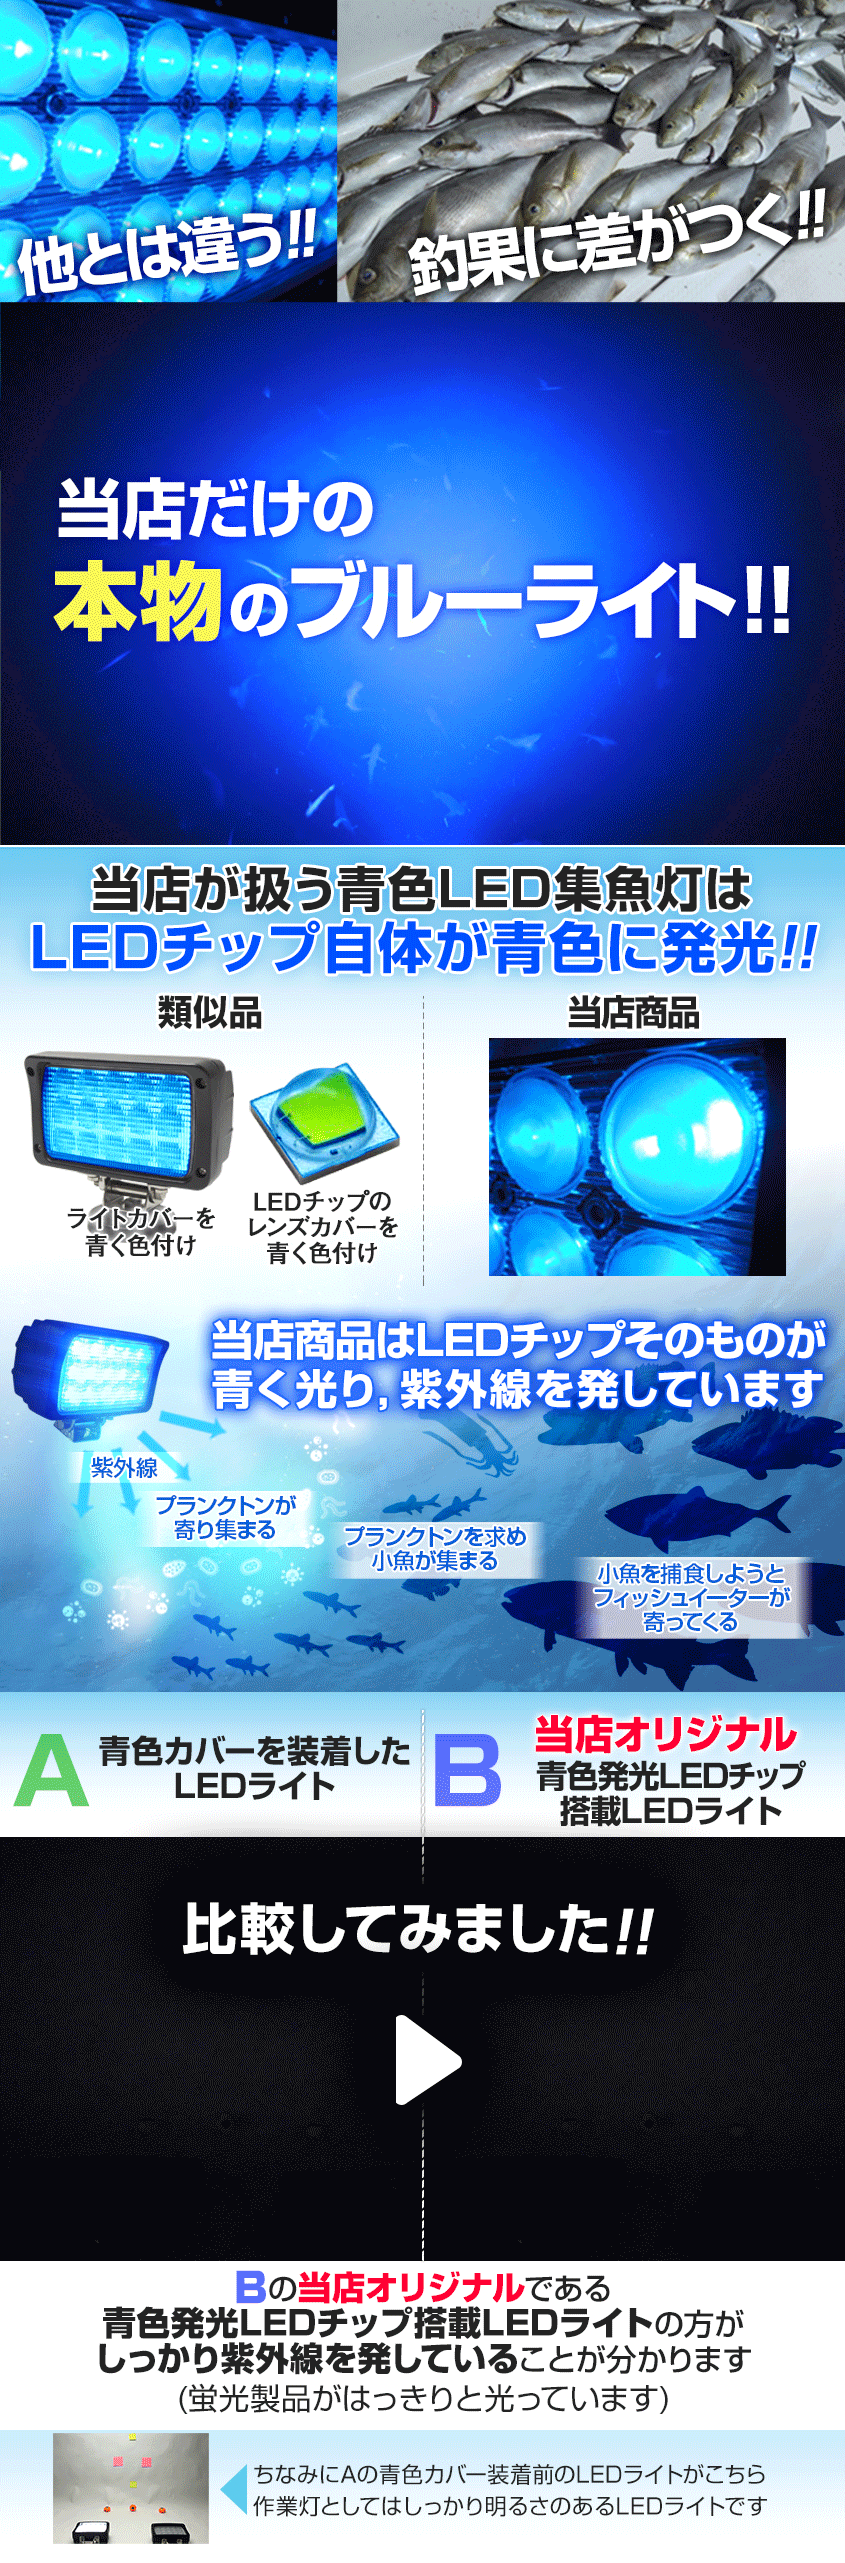 集魚灯 アジ 釣り 青 45w 集魚ライト 12v 24v バッテリー対応 ブルーライト LEDチップ搭載 タチウオ いさき サンマ 投光器 イカ釣り  ライト wlk-45w-blue K'sガレージ 通販 